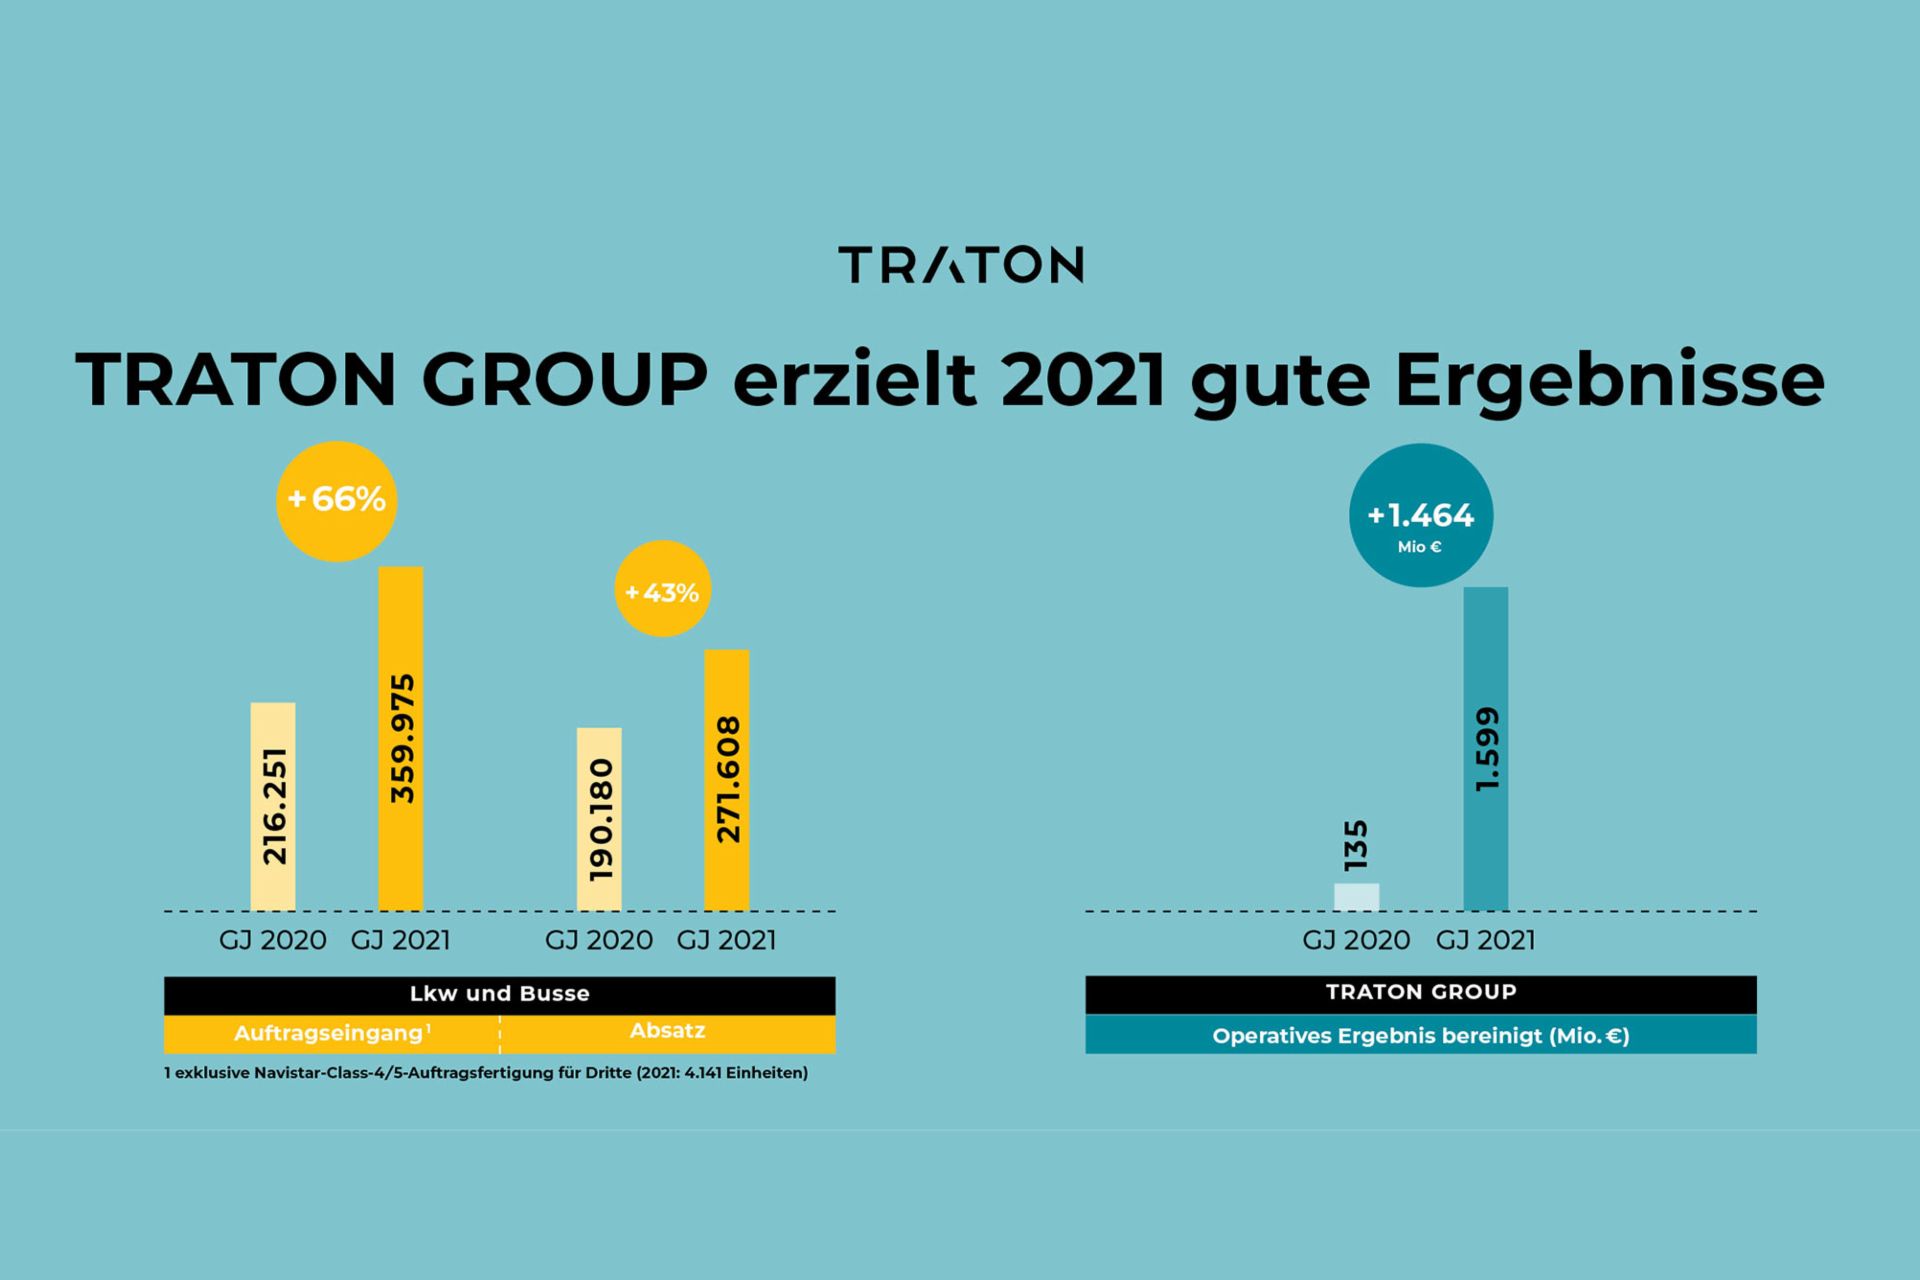 TRATON GROUP erziehlt 2021 gute Ergebnisse Grafik Auftragseingang, Absatz und Operatives Ergebnis bereinigt 